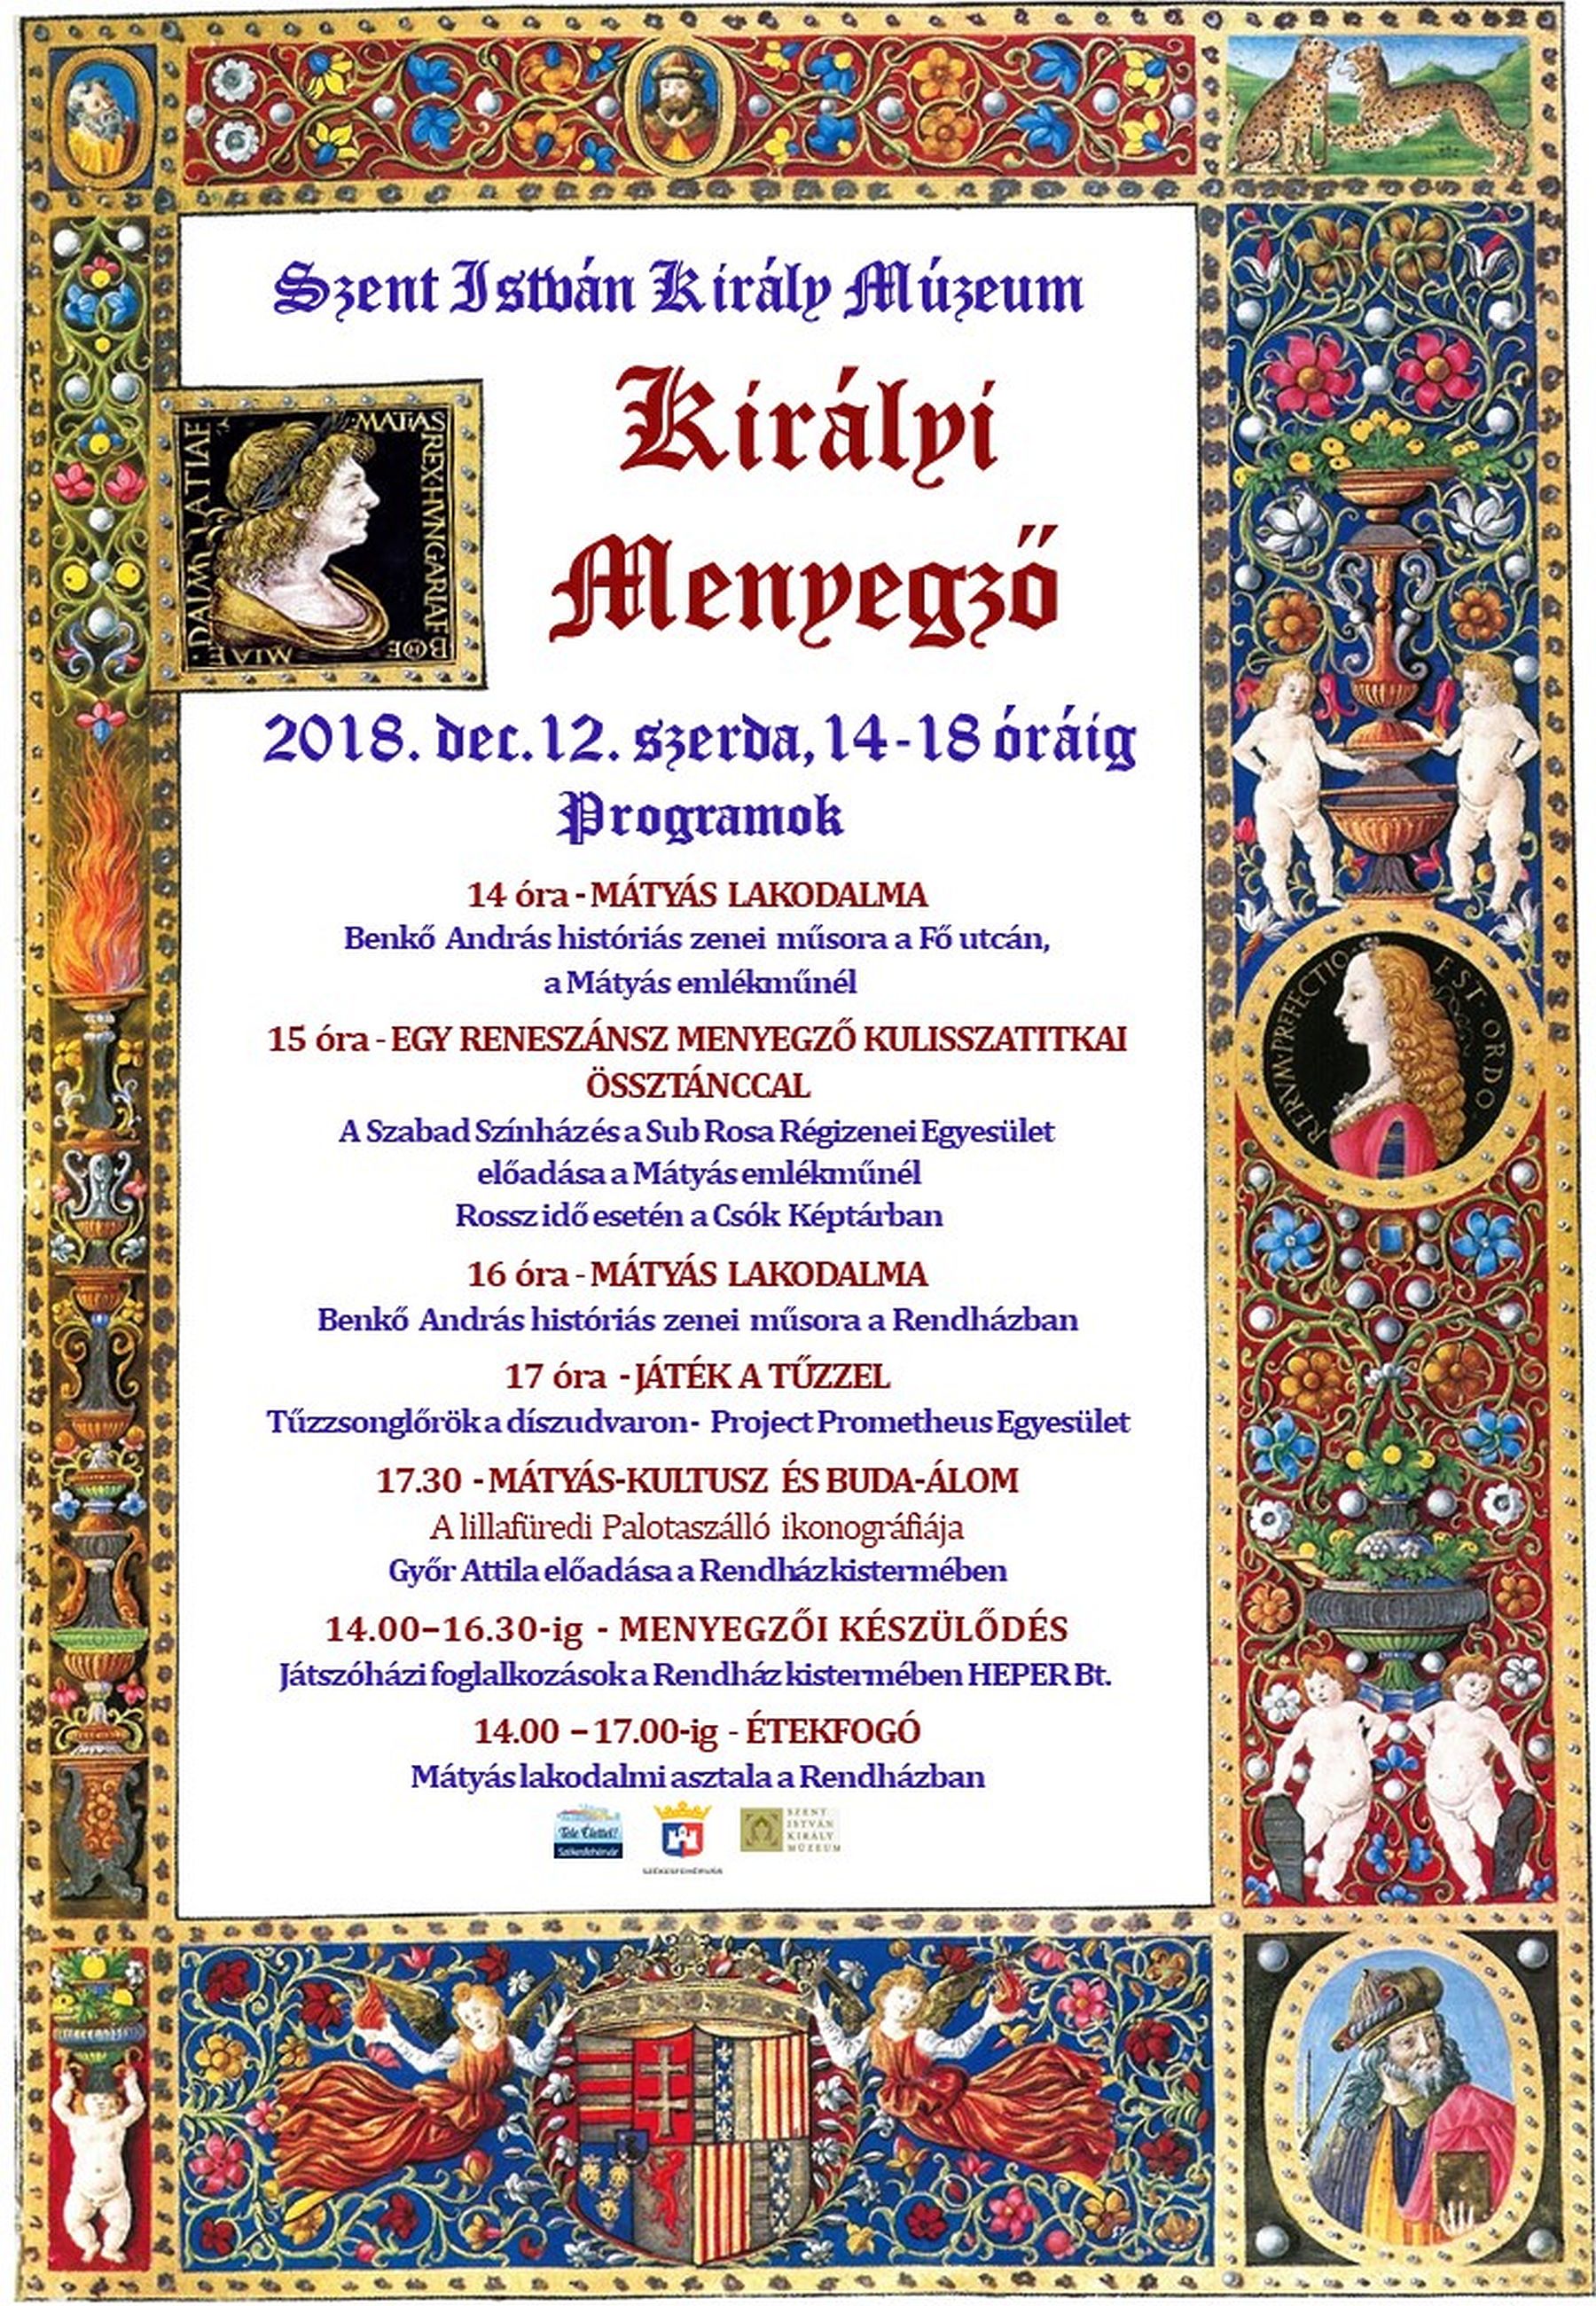 Királyi menyegző - tematikus délután lesz a Szent István Király Múzeumban